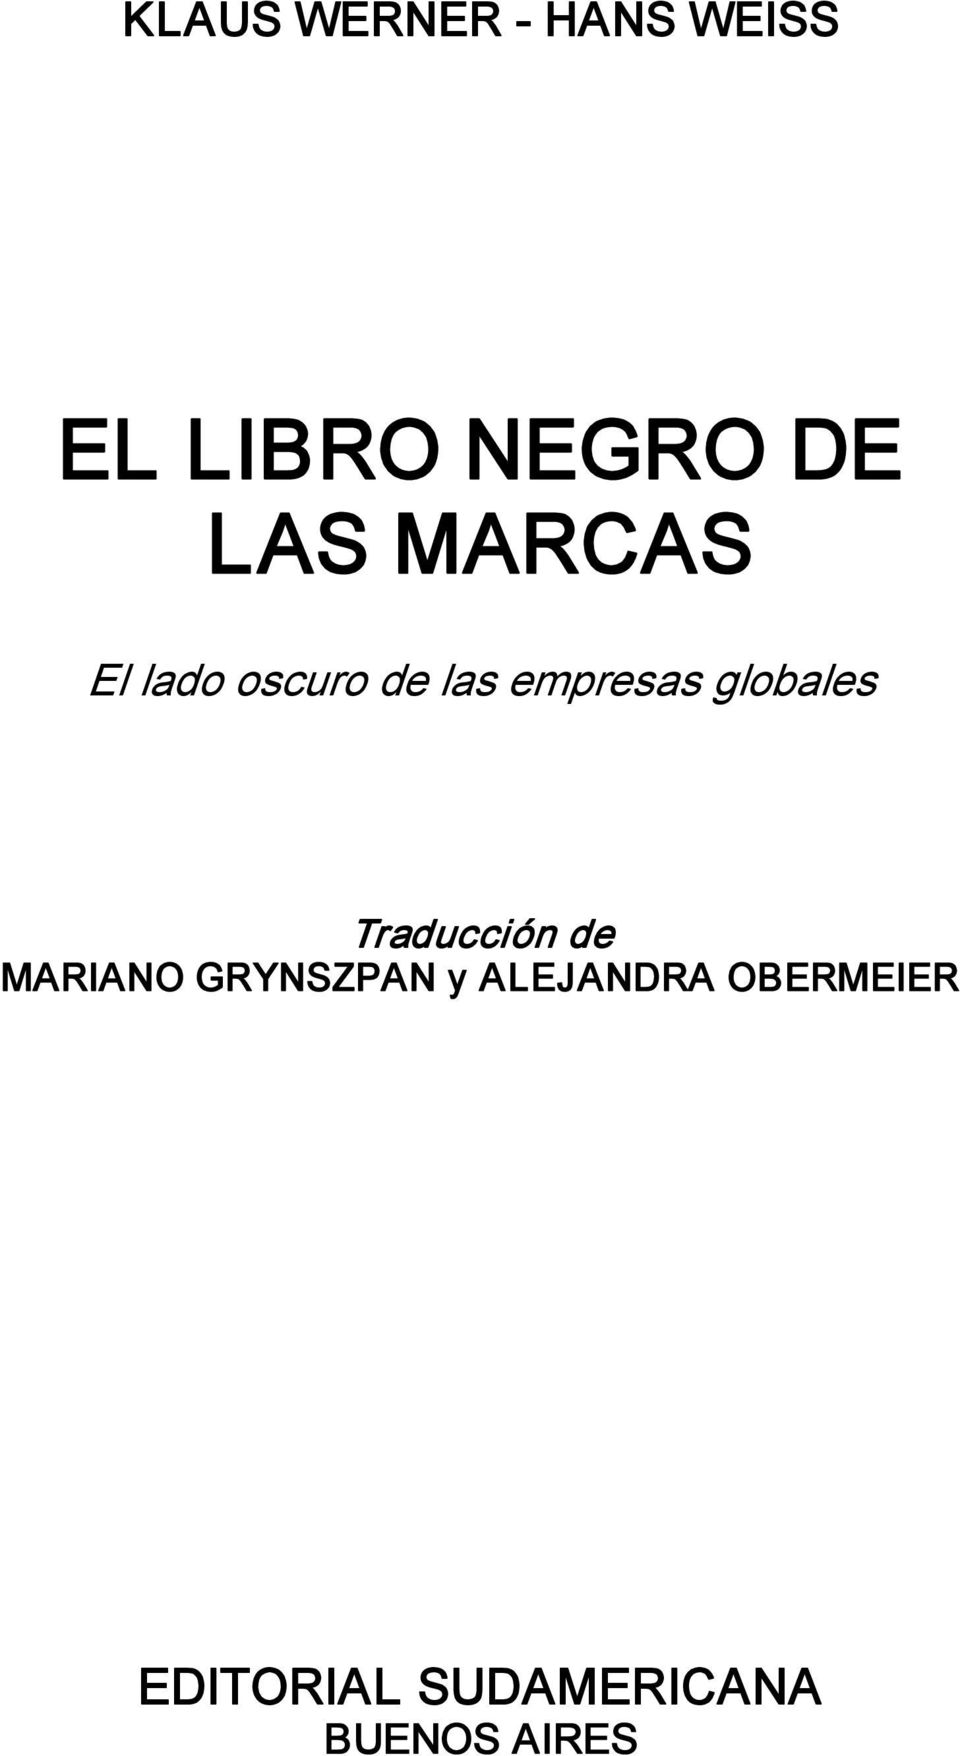 globales Traducción de MARIANO GRYNSZPAN y